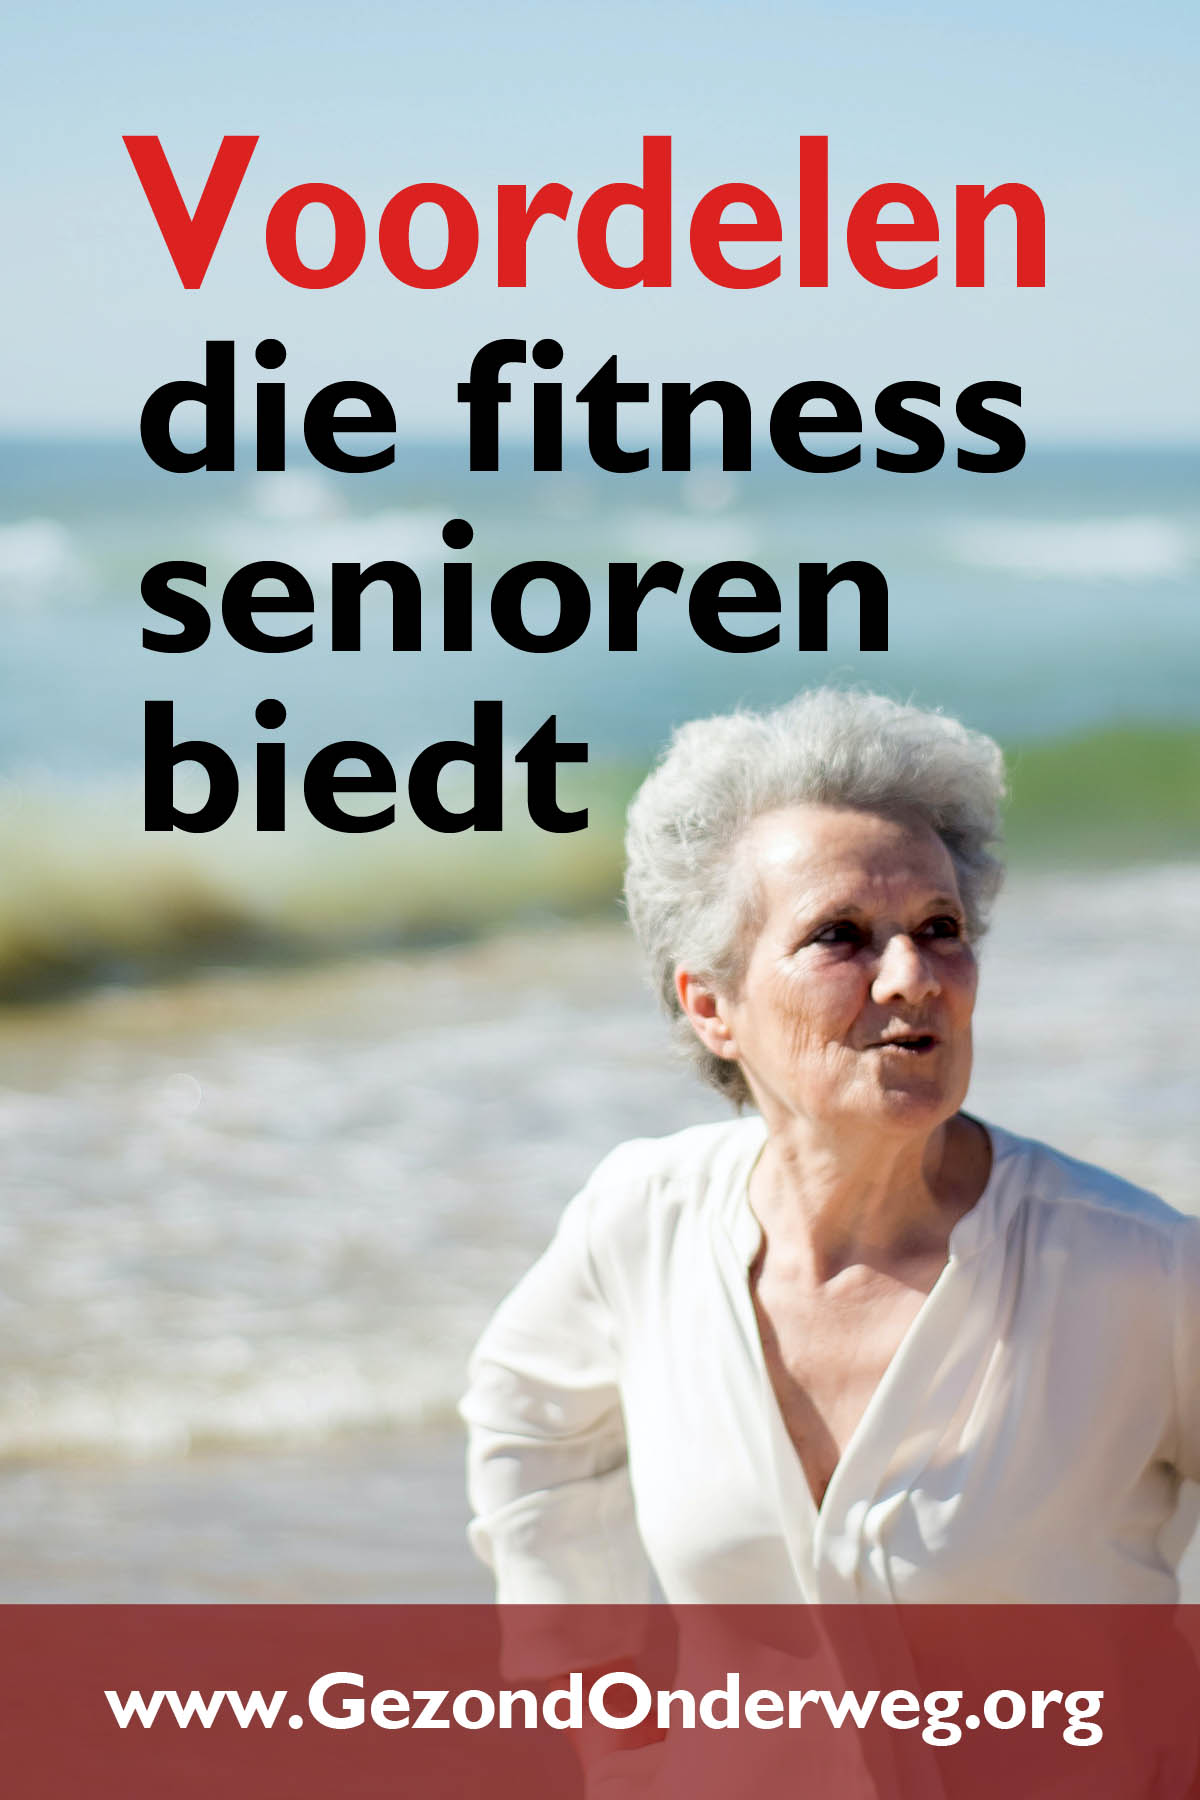 Voordelen die fitness senioren biedt